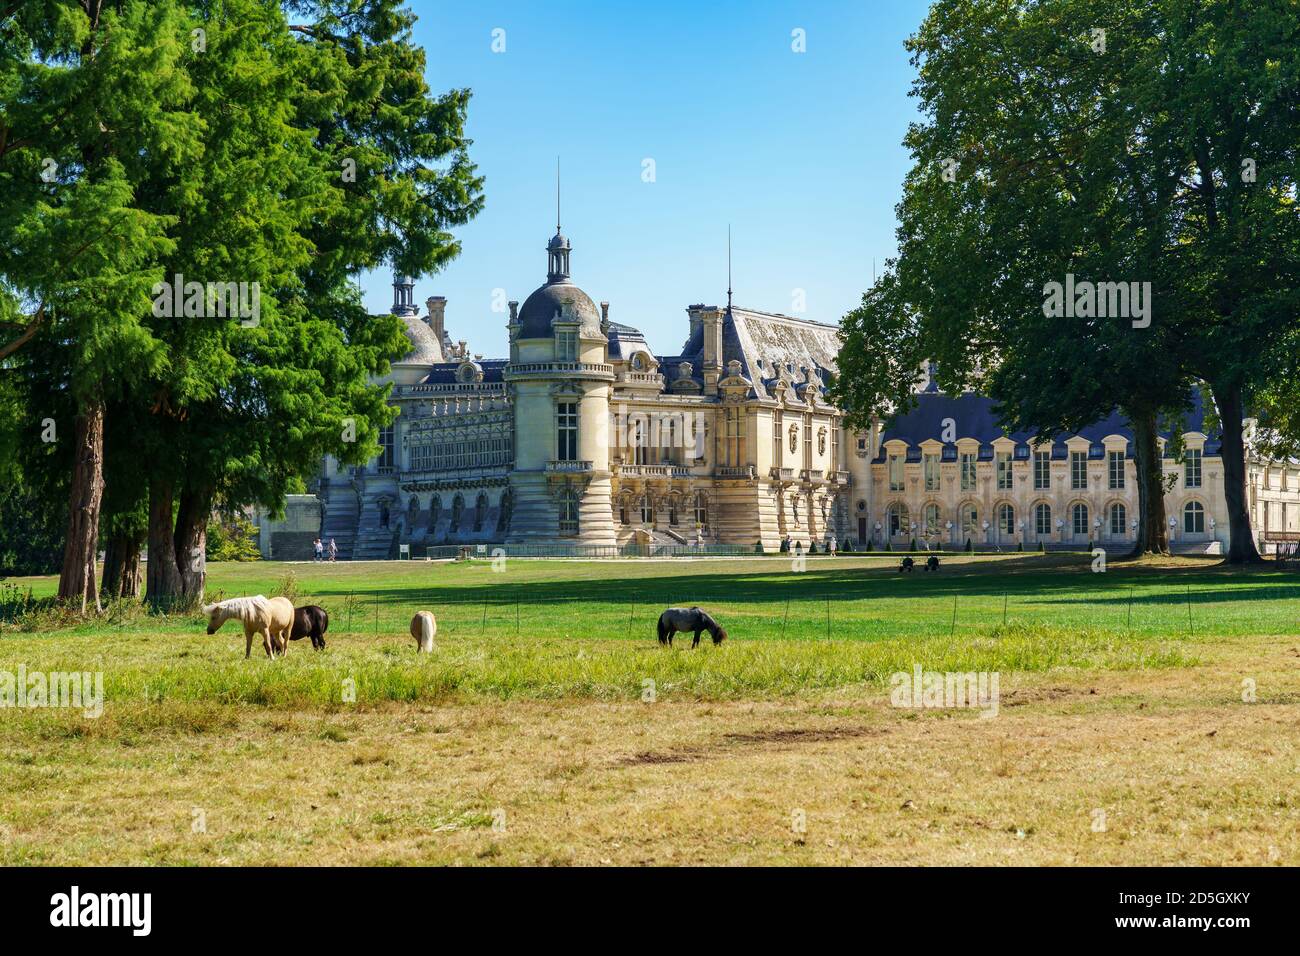 Rückansicht des Chateau de Chantilly mit Pferden in der Vordergrund - Frankreich Stockfoto